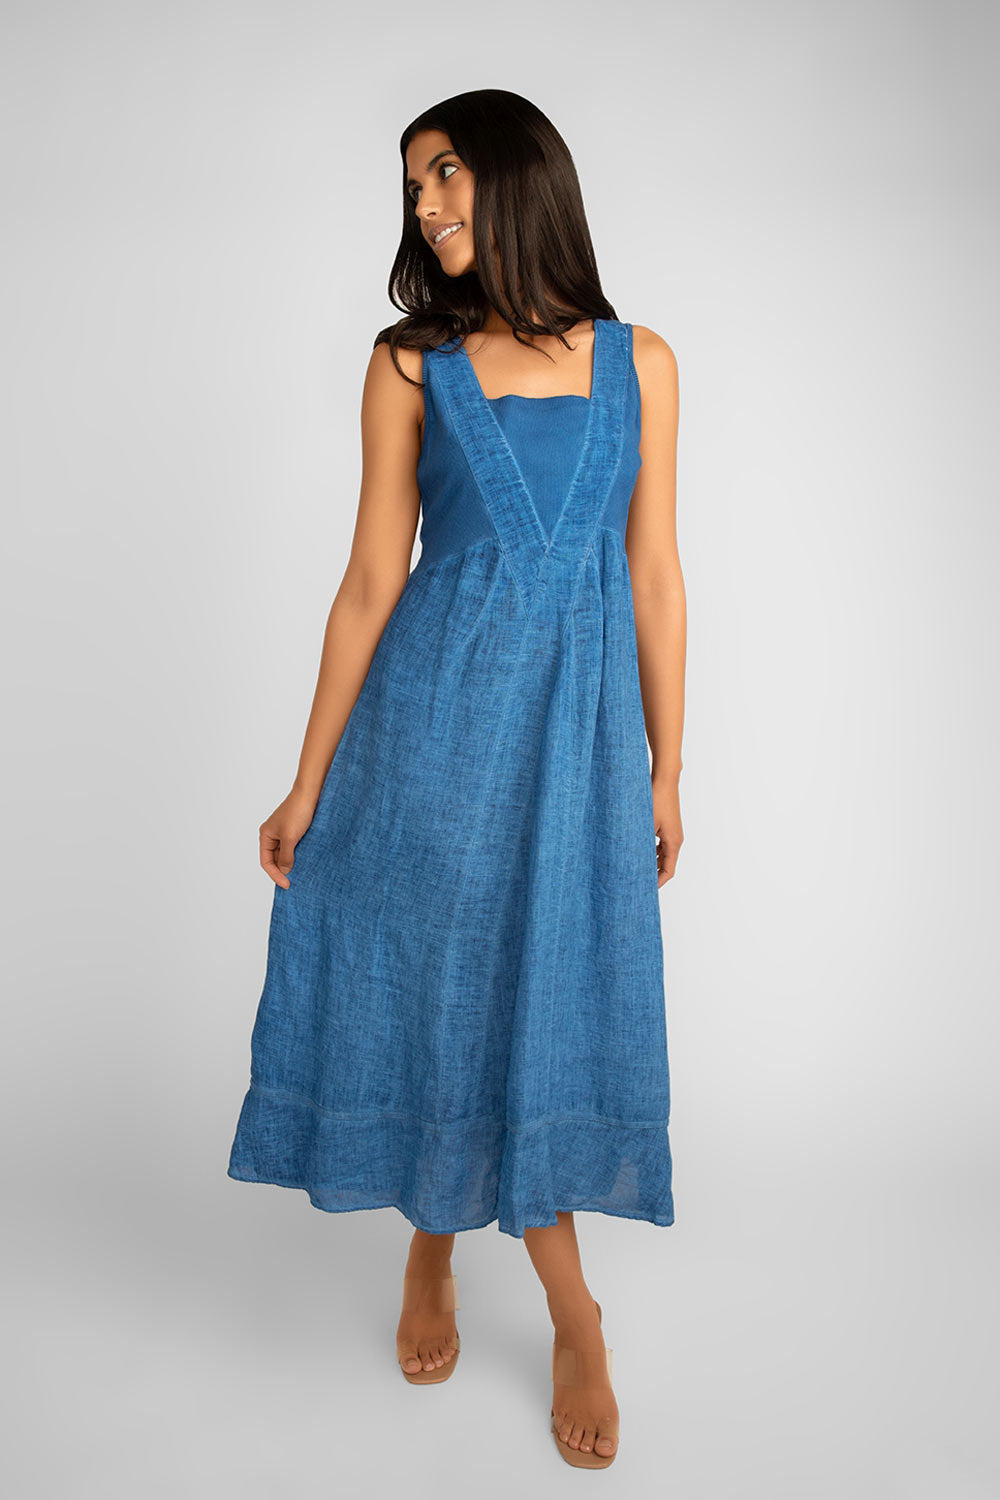 Carre Noir (6807) Sleeveless Square Neck Garment Dye Linen Dress in Blue